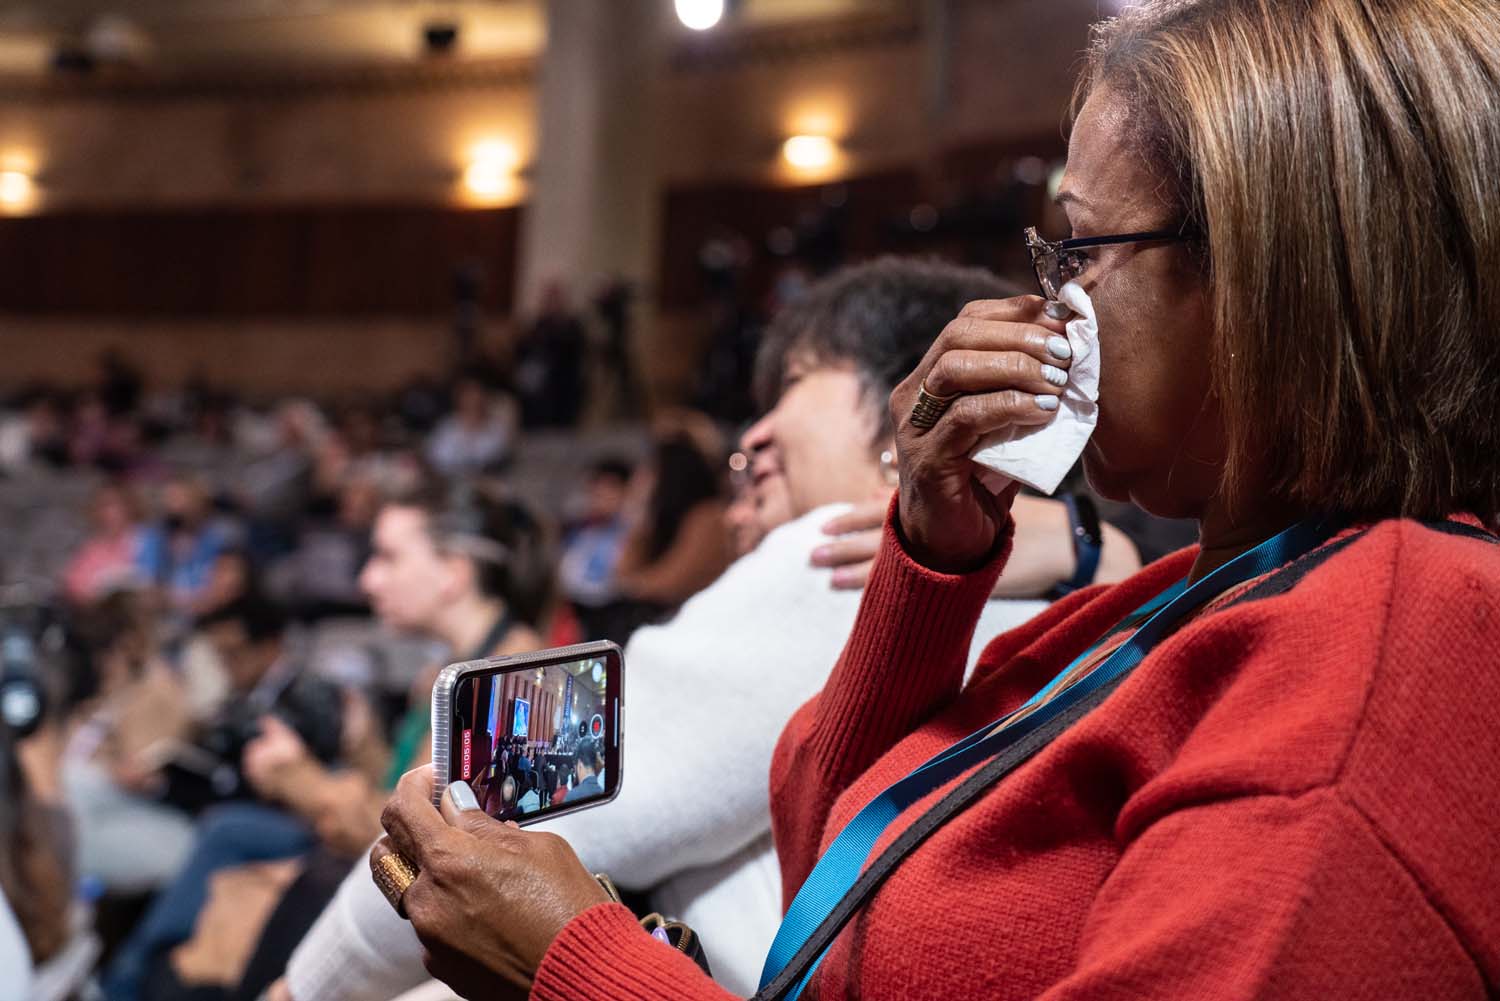 Una mujer se sienta en la audiencia, graba la audiencia en su teléfono celular y se limpia las lágrimas con un pañuelo.